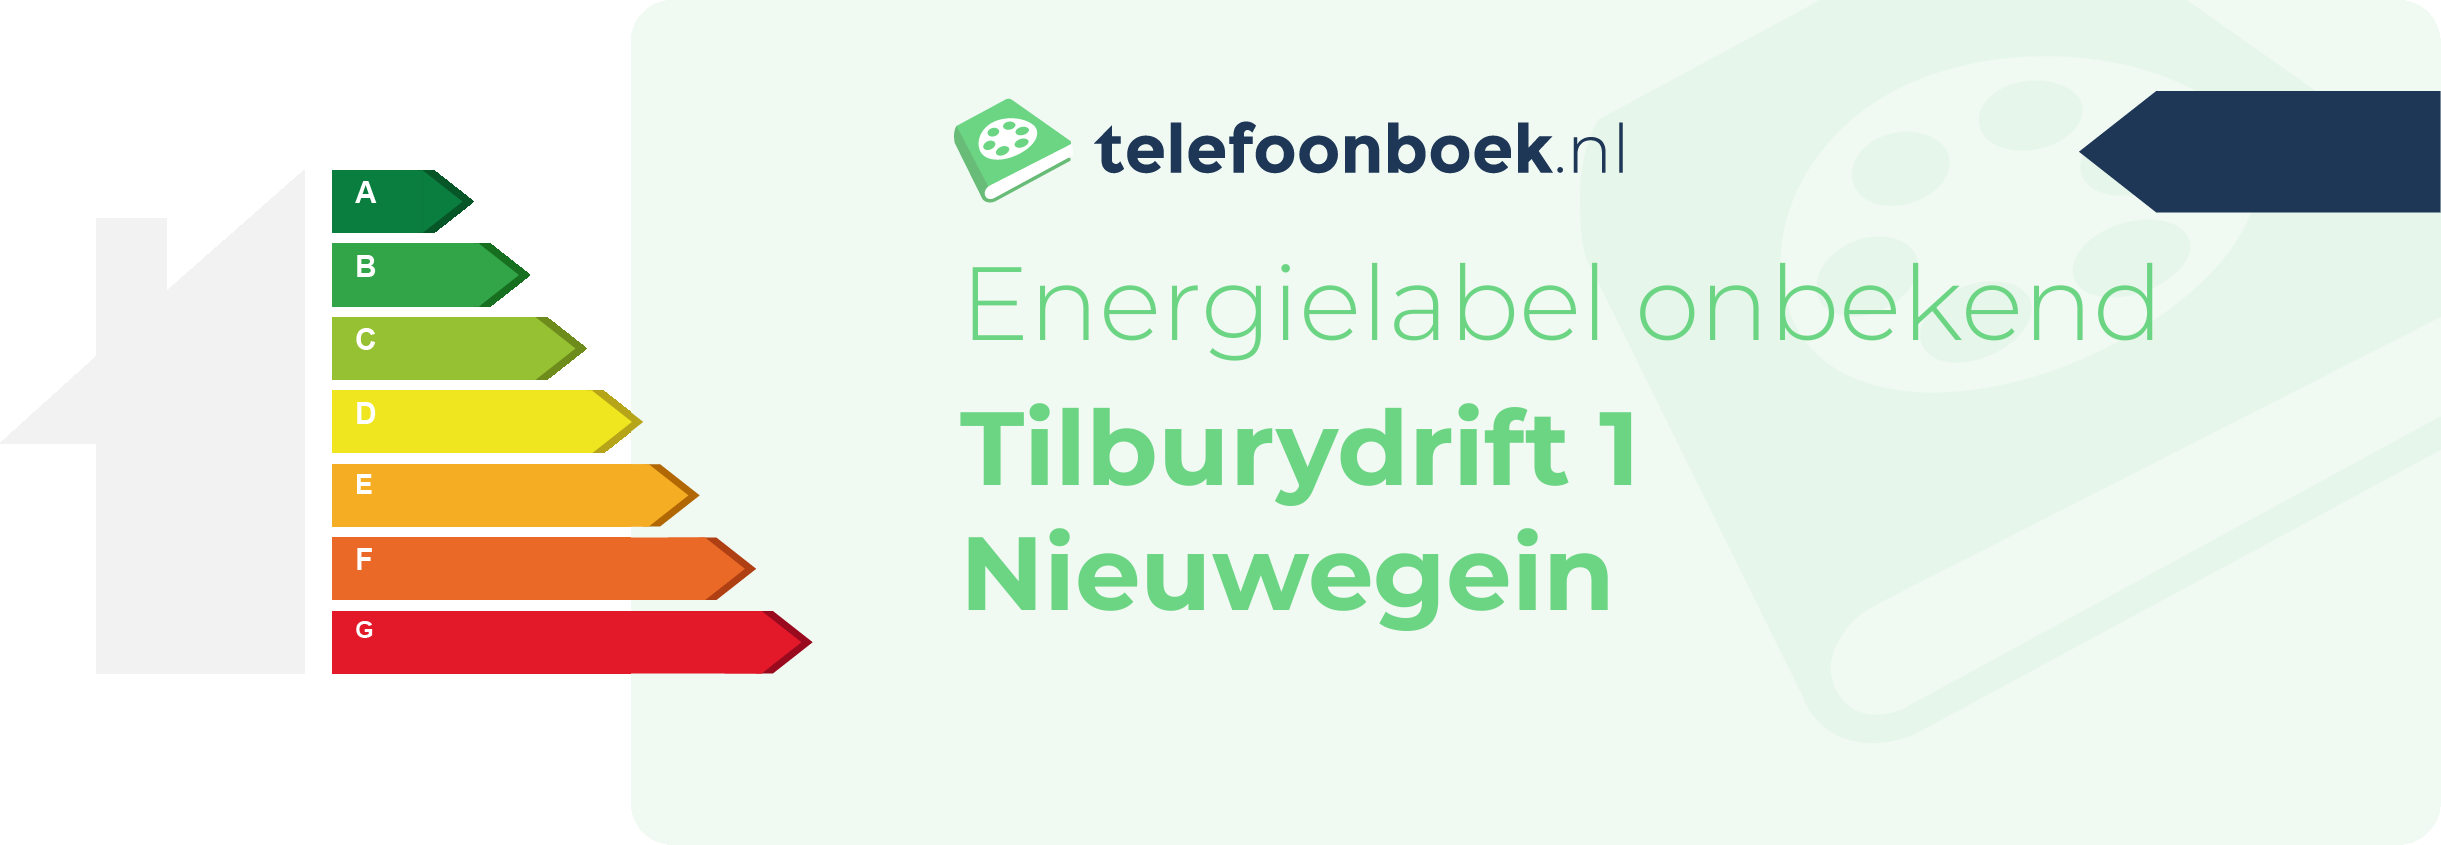 Energielabel Tilburydrift 1 Nieuwegein